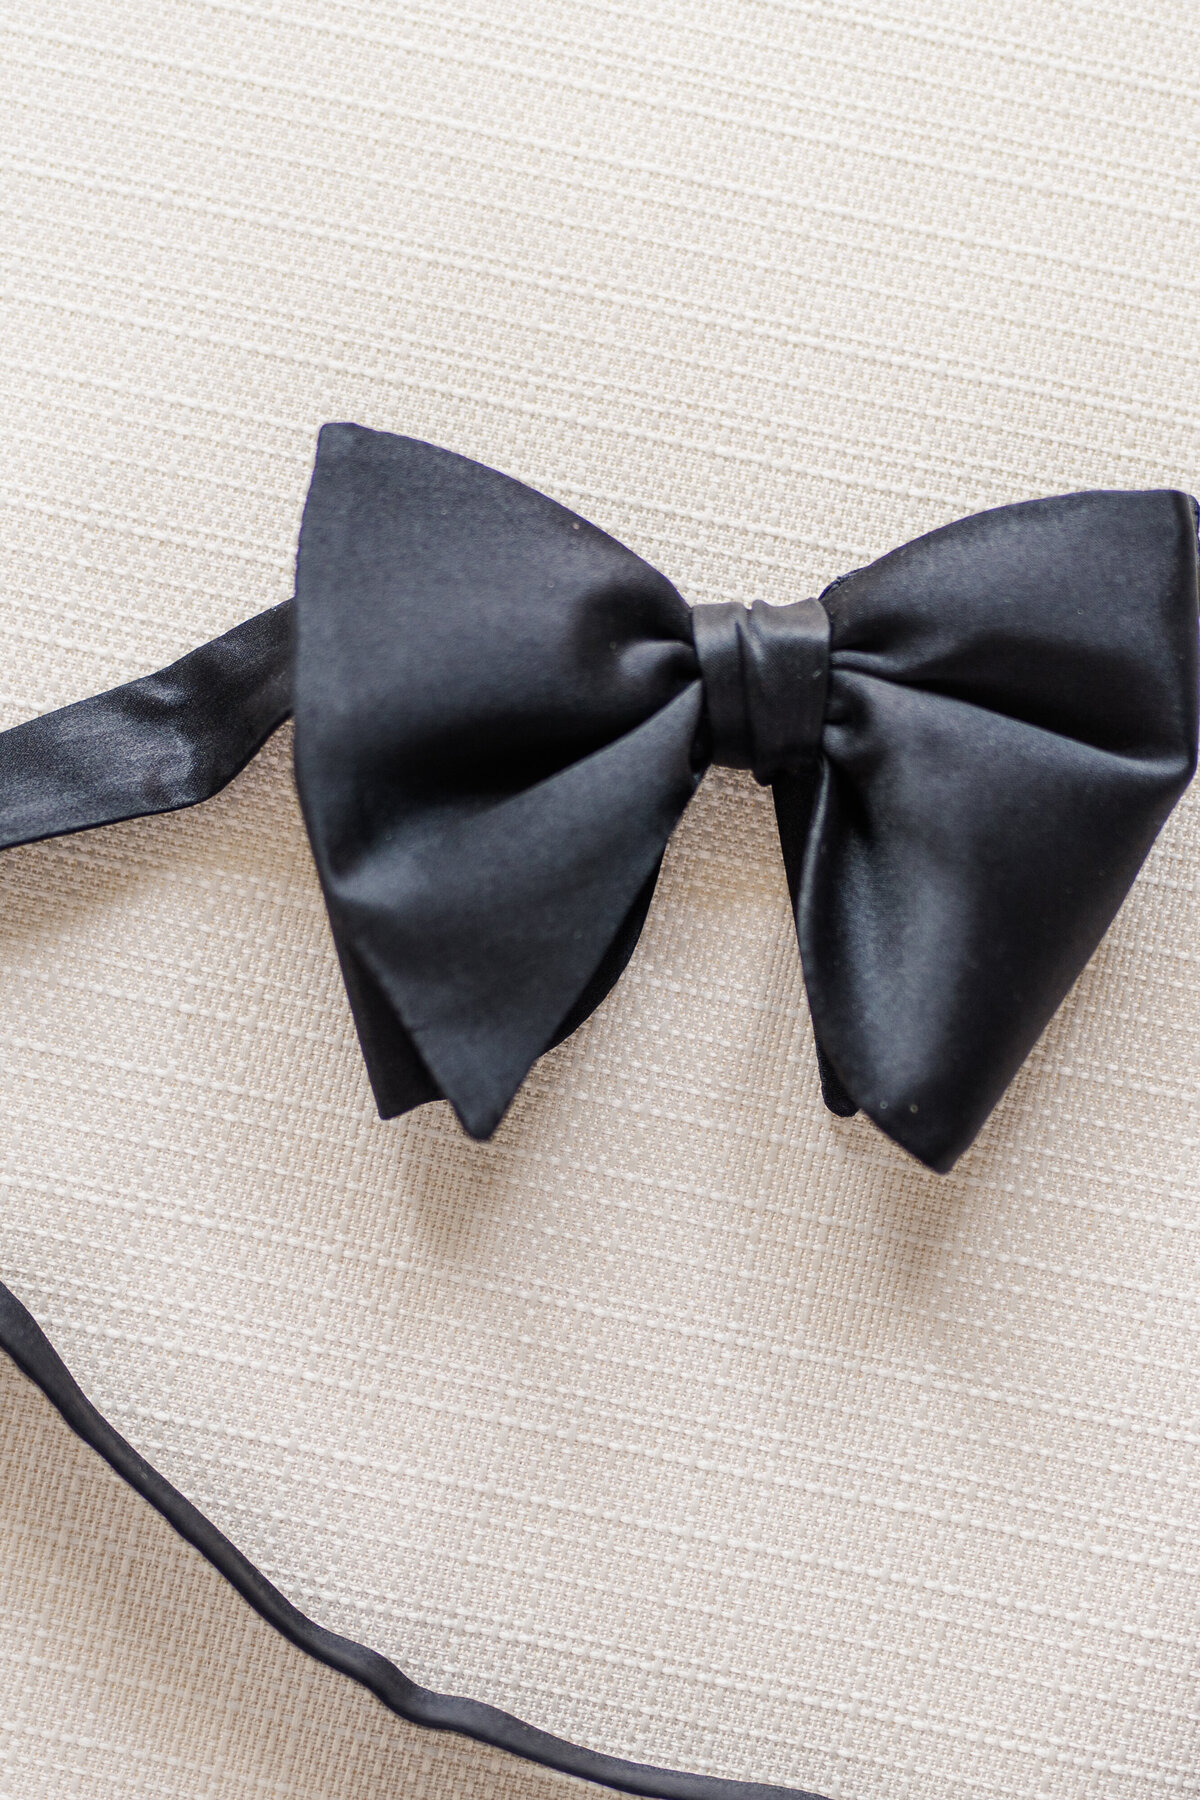 Black tie wedding details